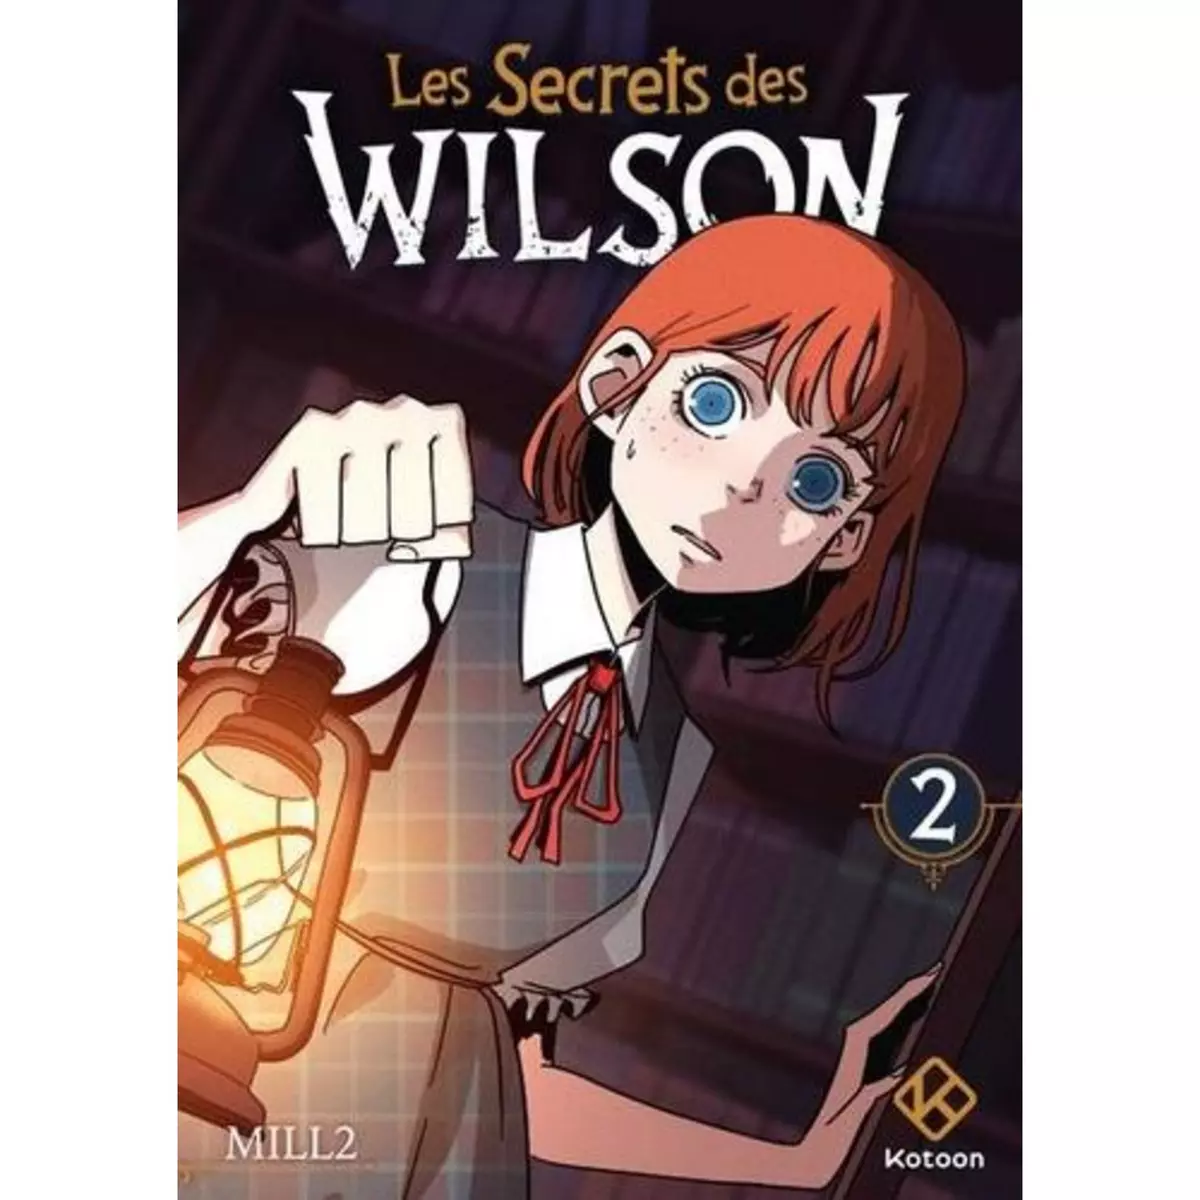  LES SECRETS DES WILSON TOME 2 , Mill2